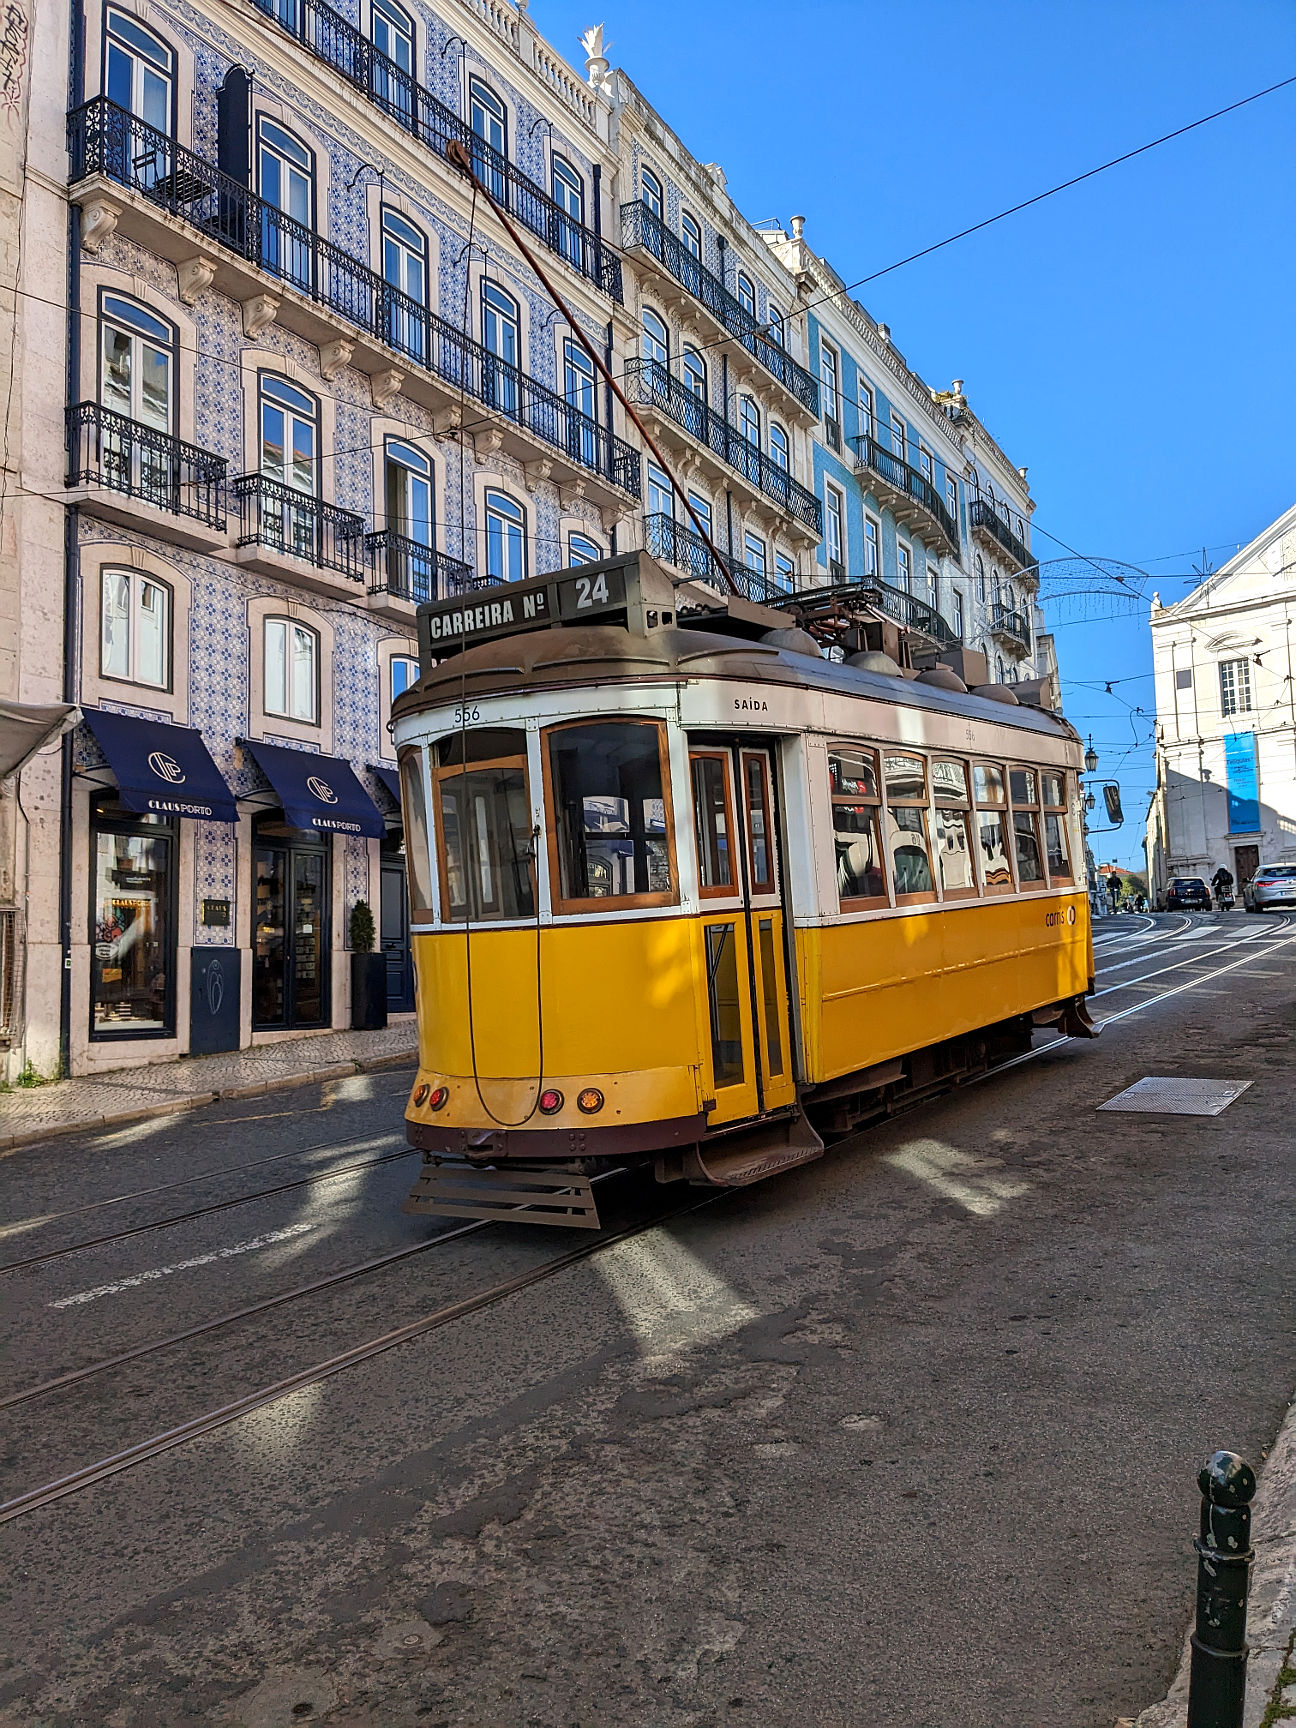 Lissabon Highlights